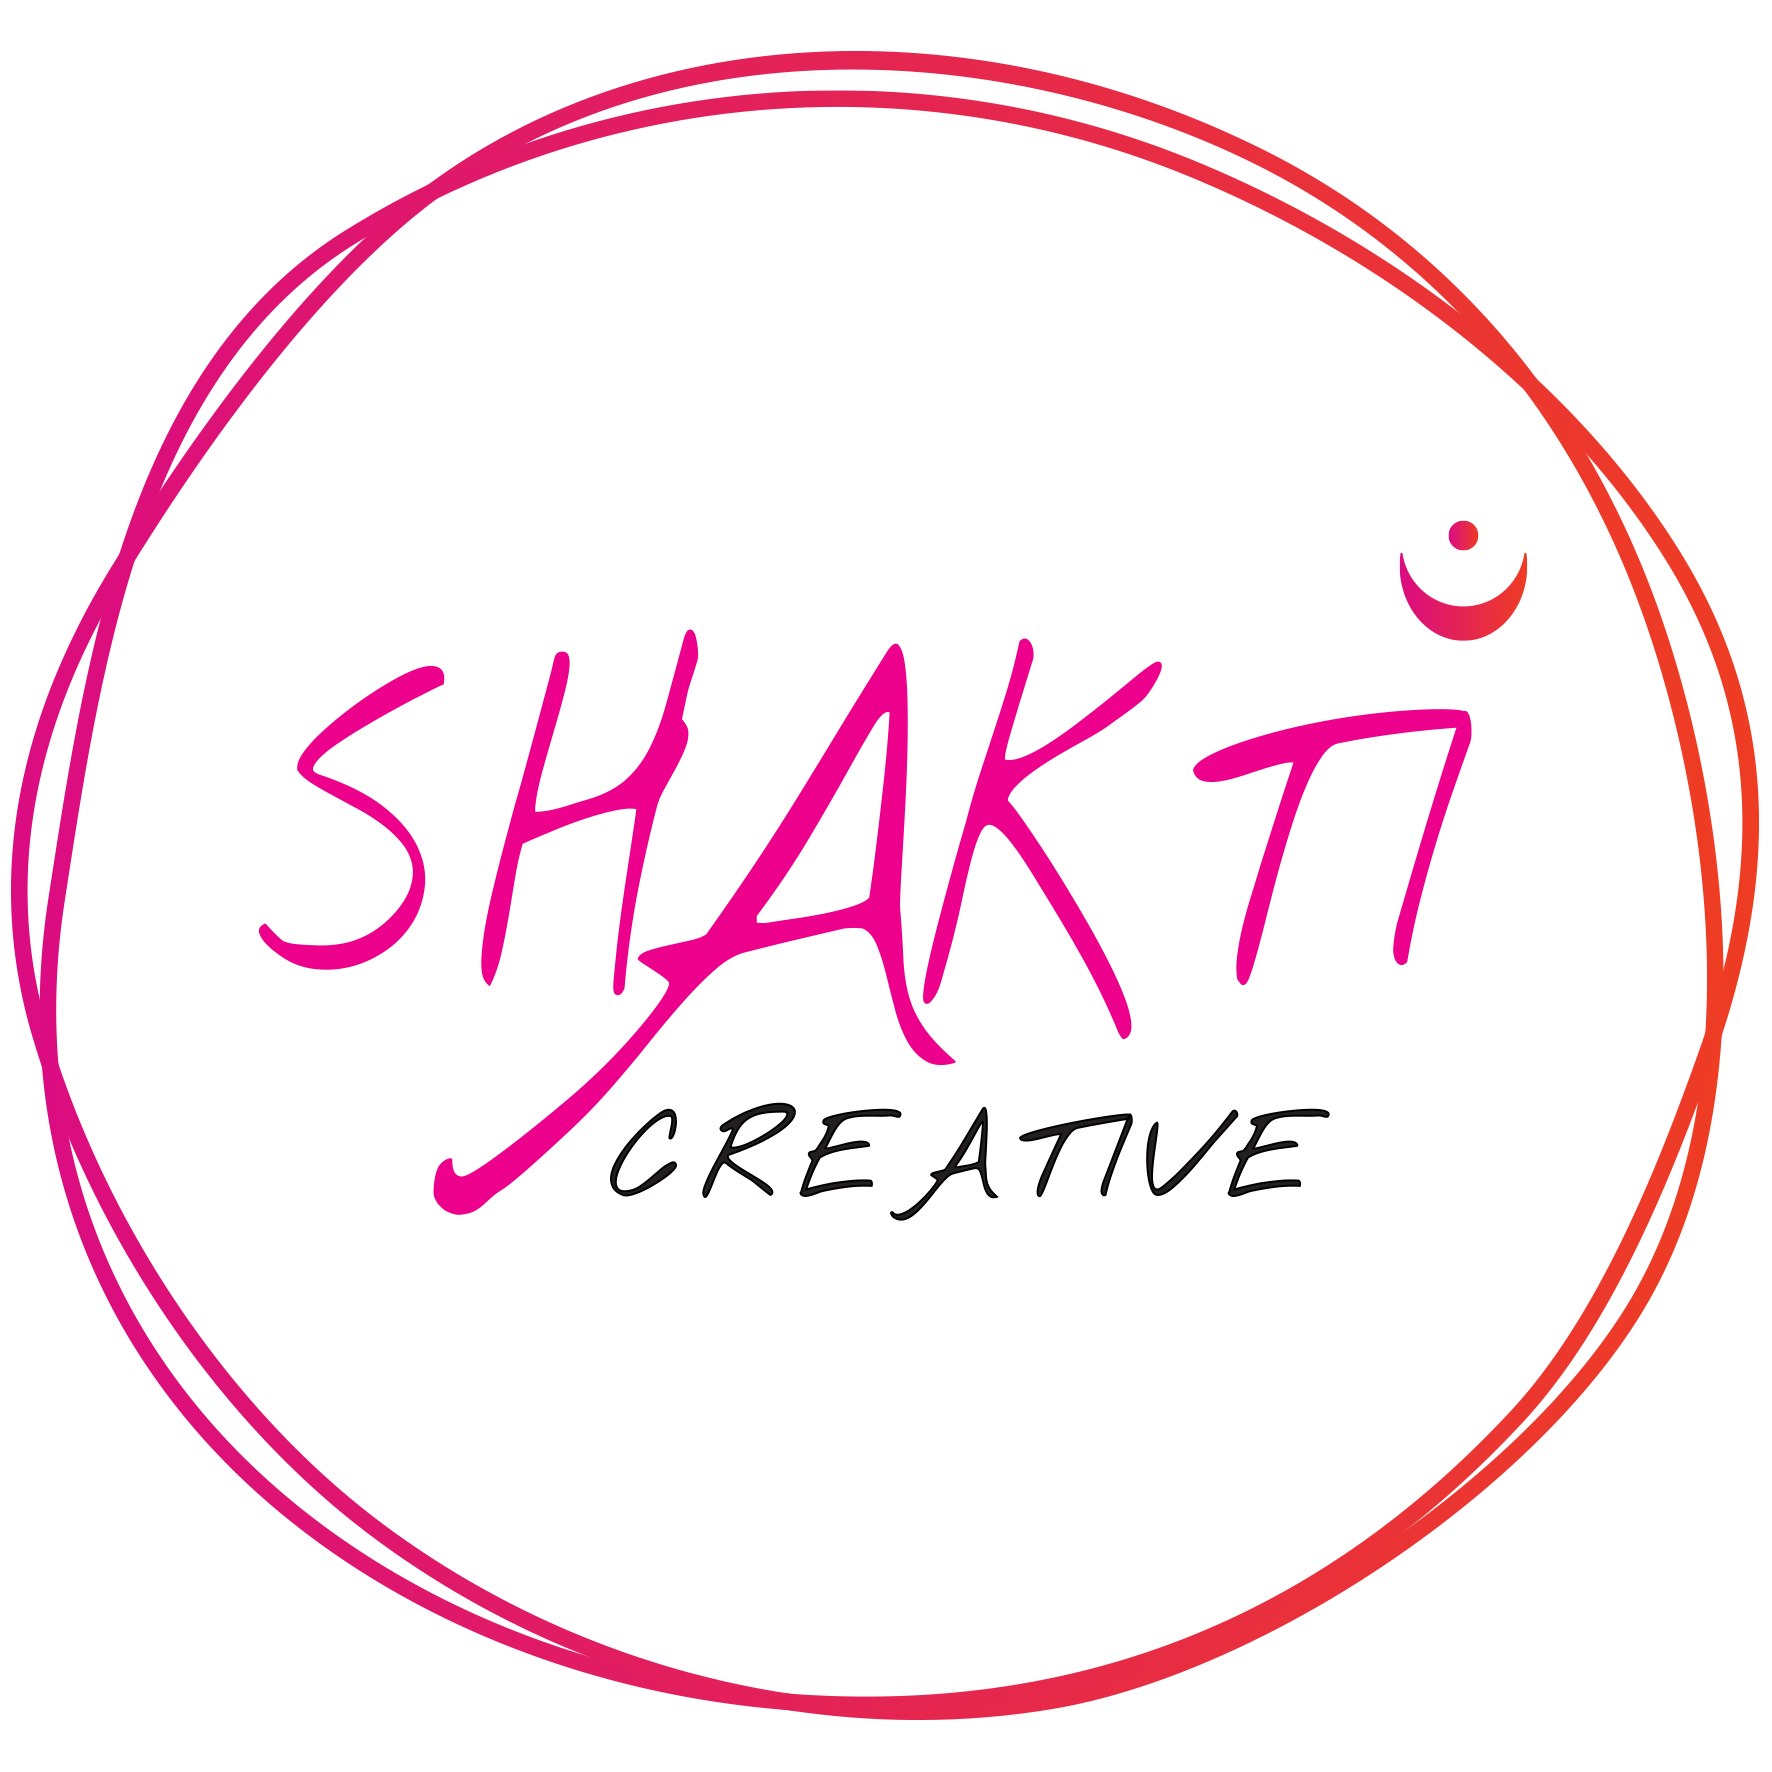 Shakti Creative Service